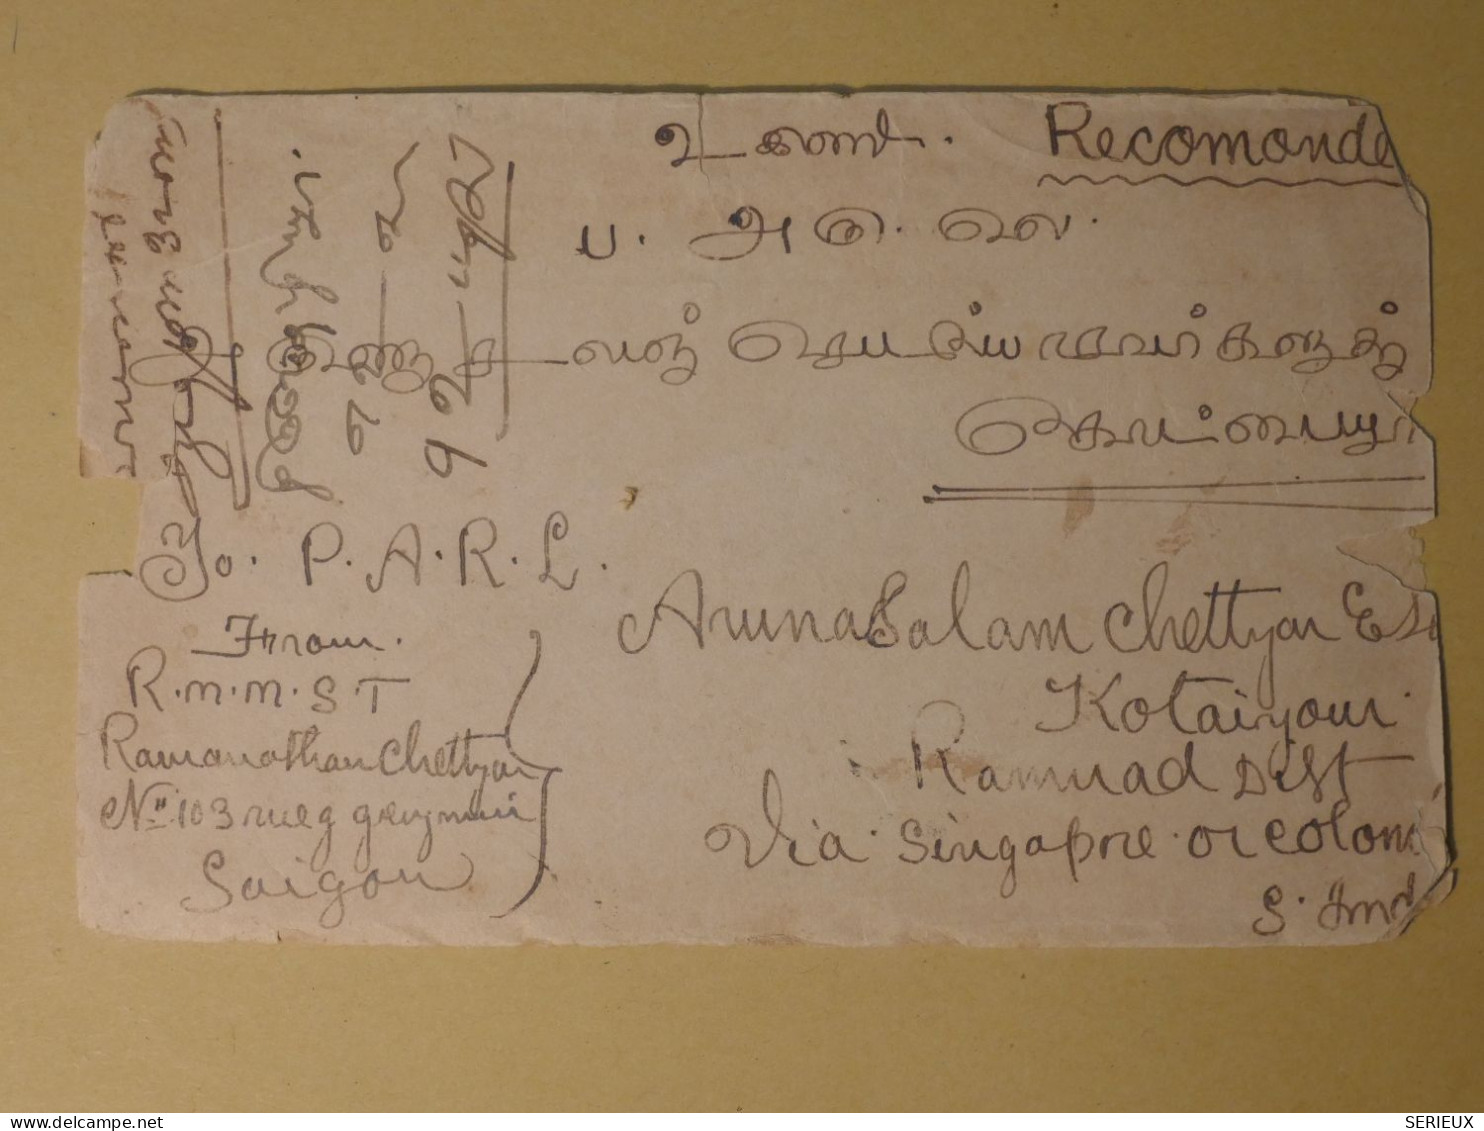 DG1  INDOCHINE BELLE LETTRE RECO.  1929 SAIGON    A  KOTAIYOUR SINGAPORE   +AFF. INTERESSANT+++ - Lettres & Documents